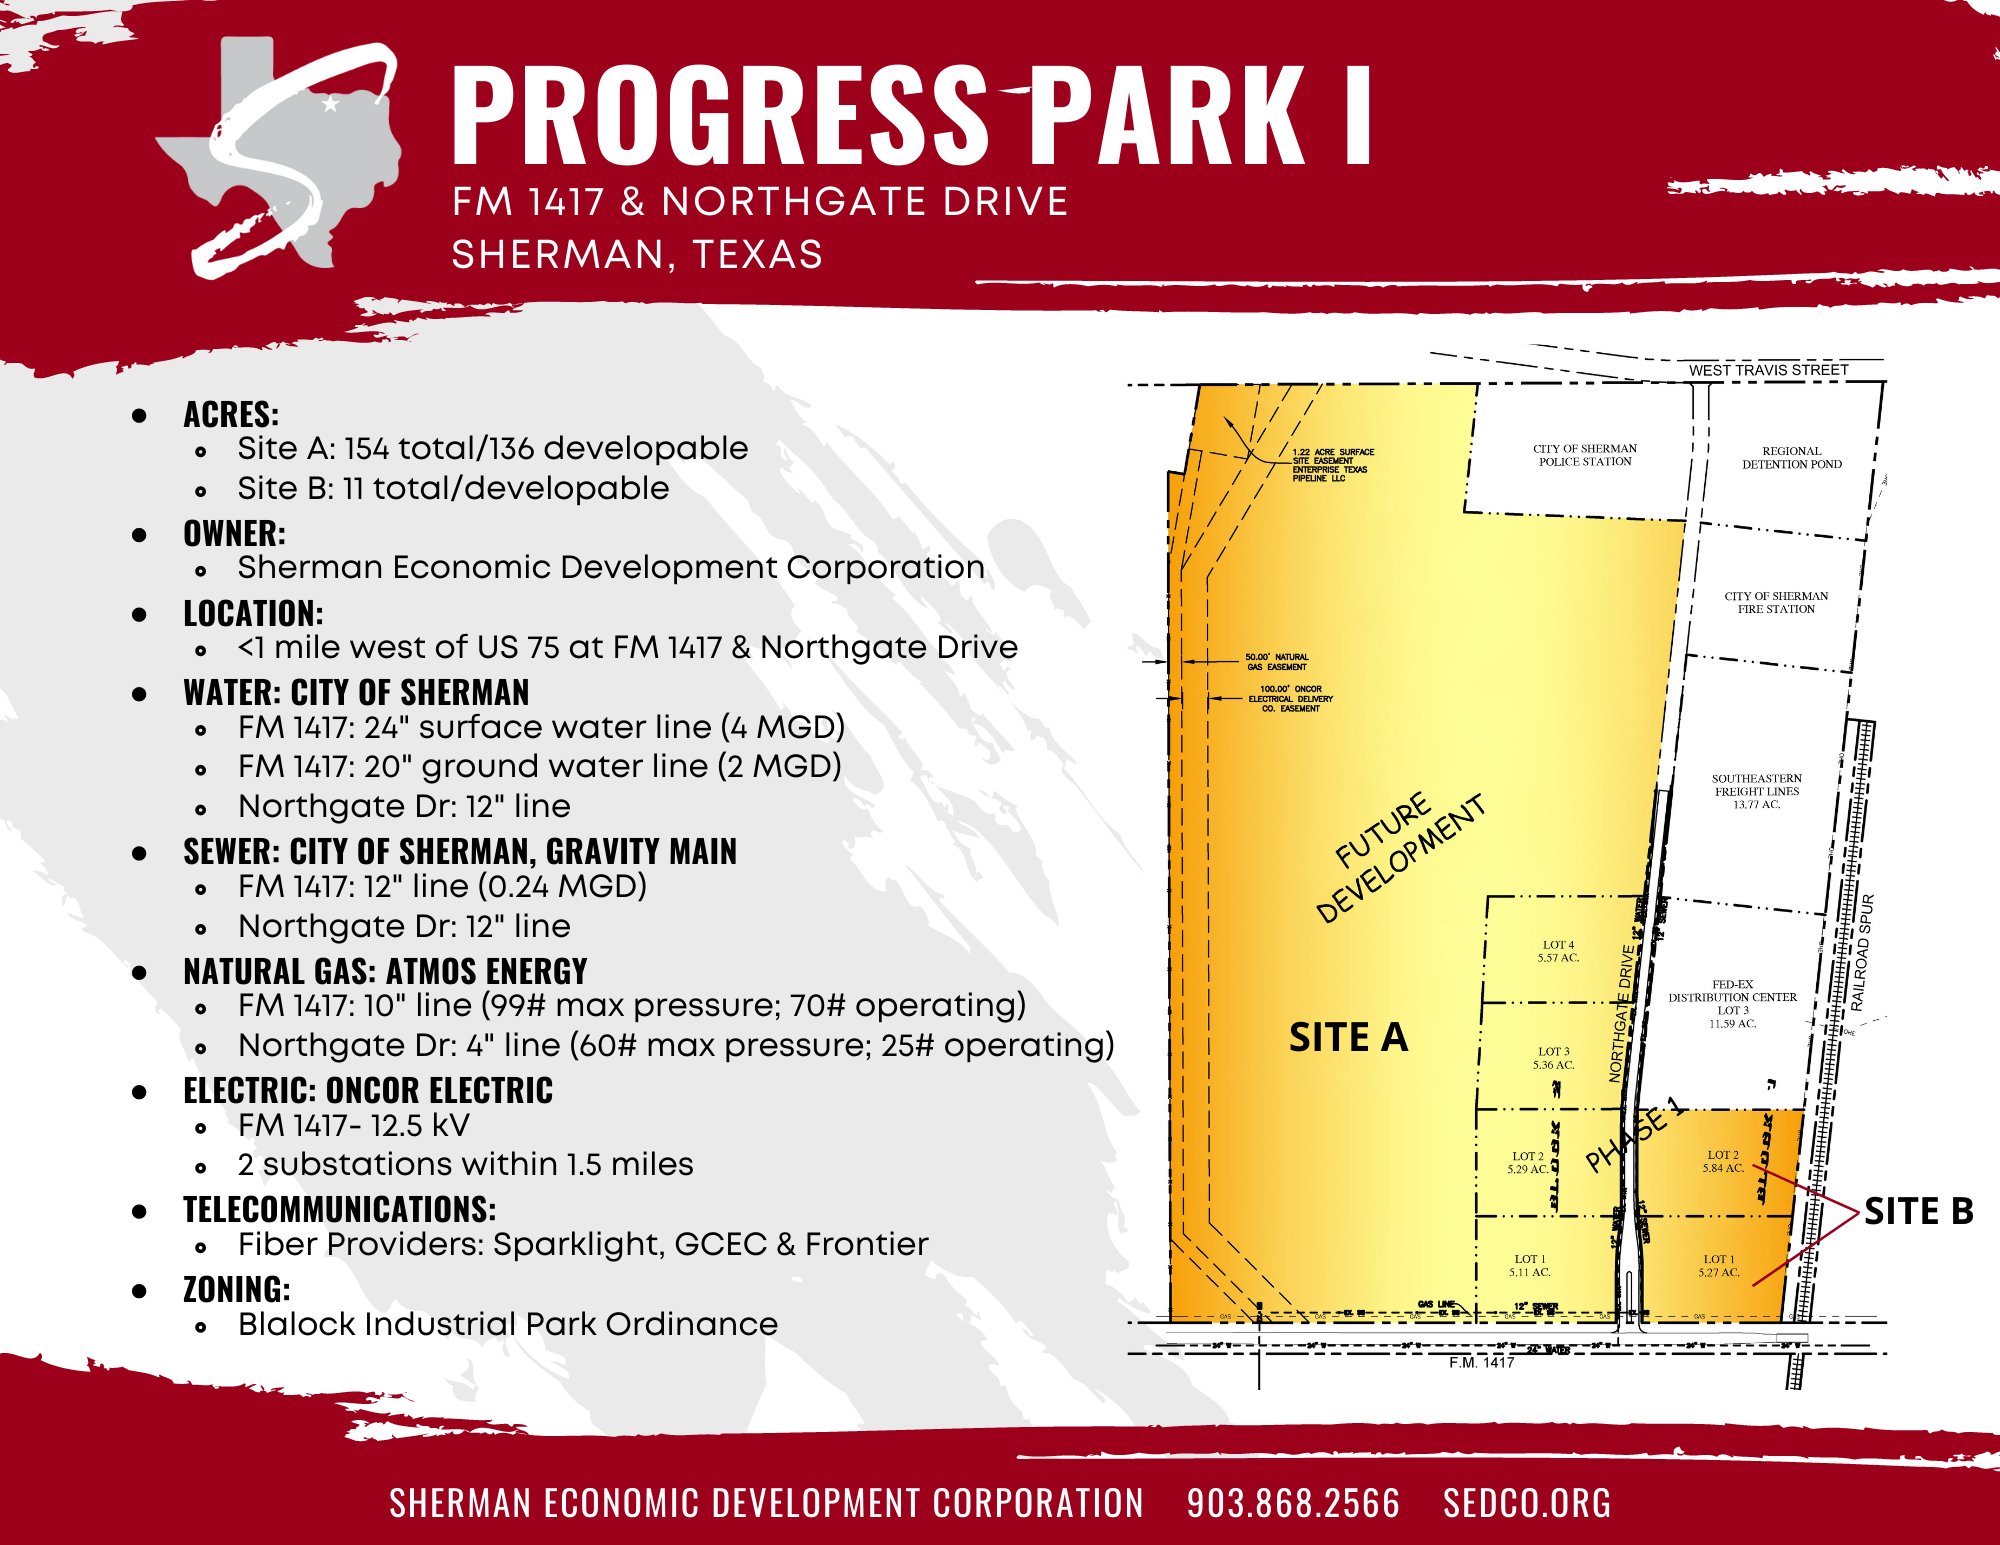 progress park 1 details